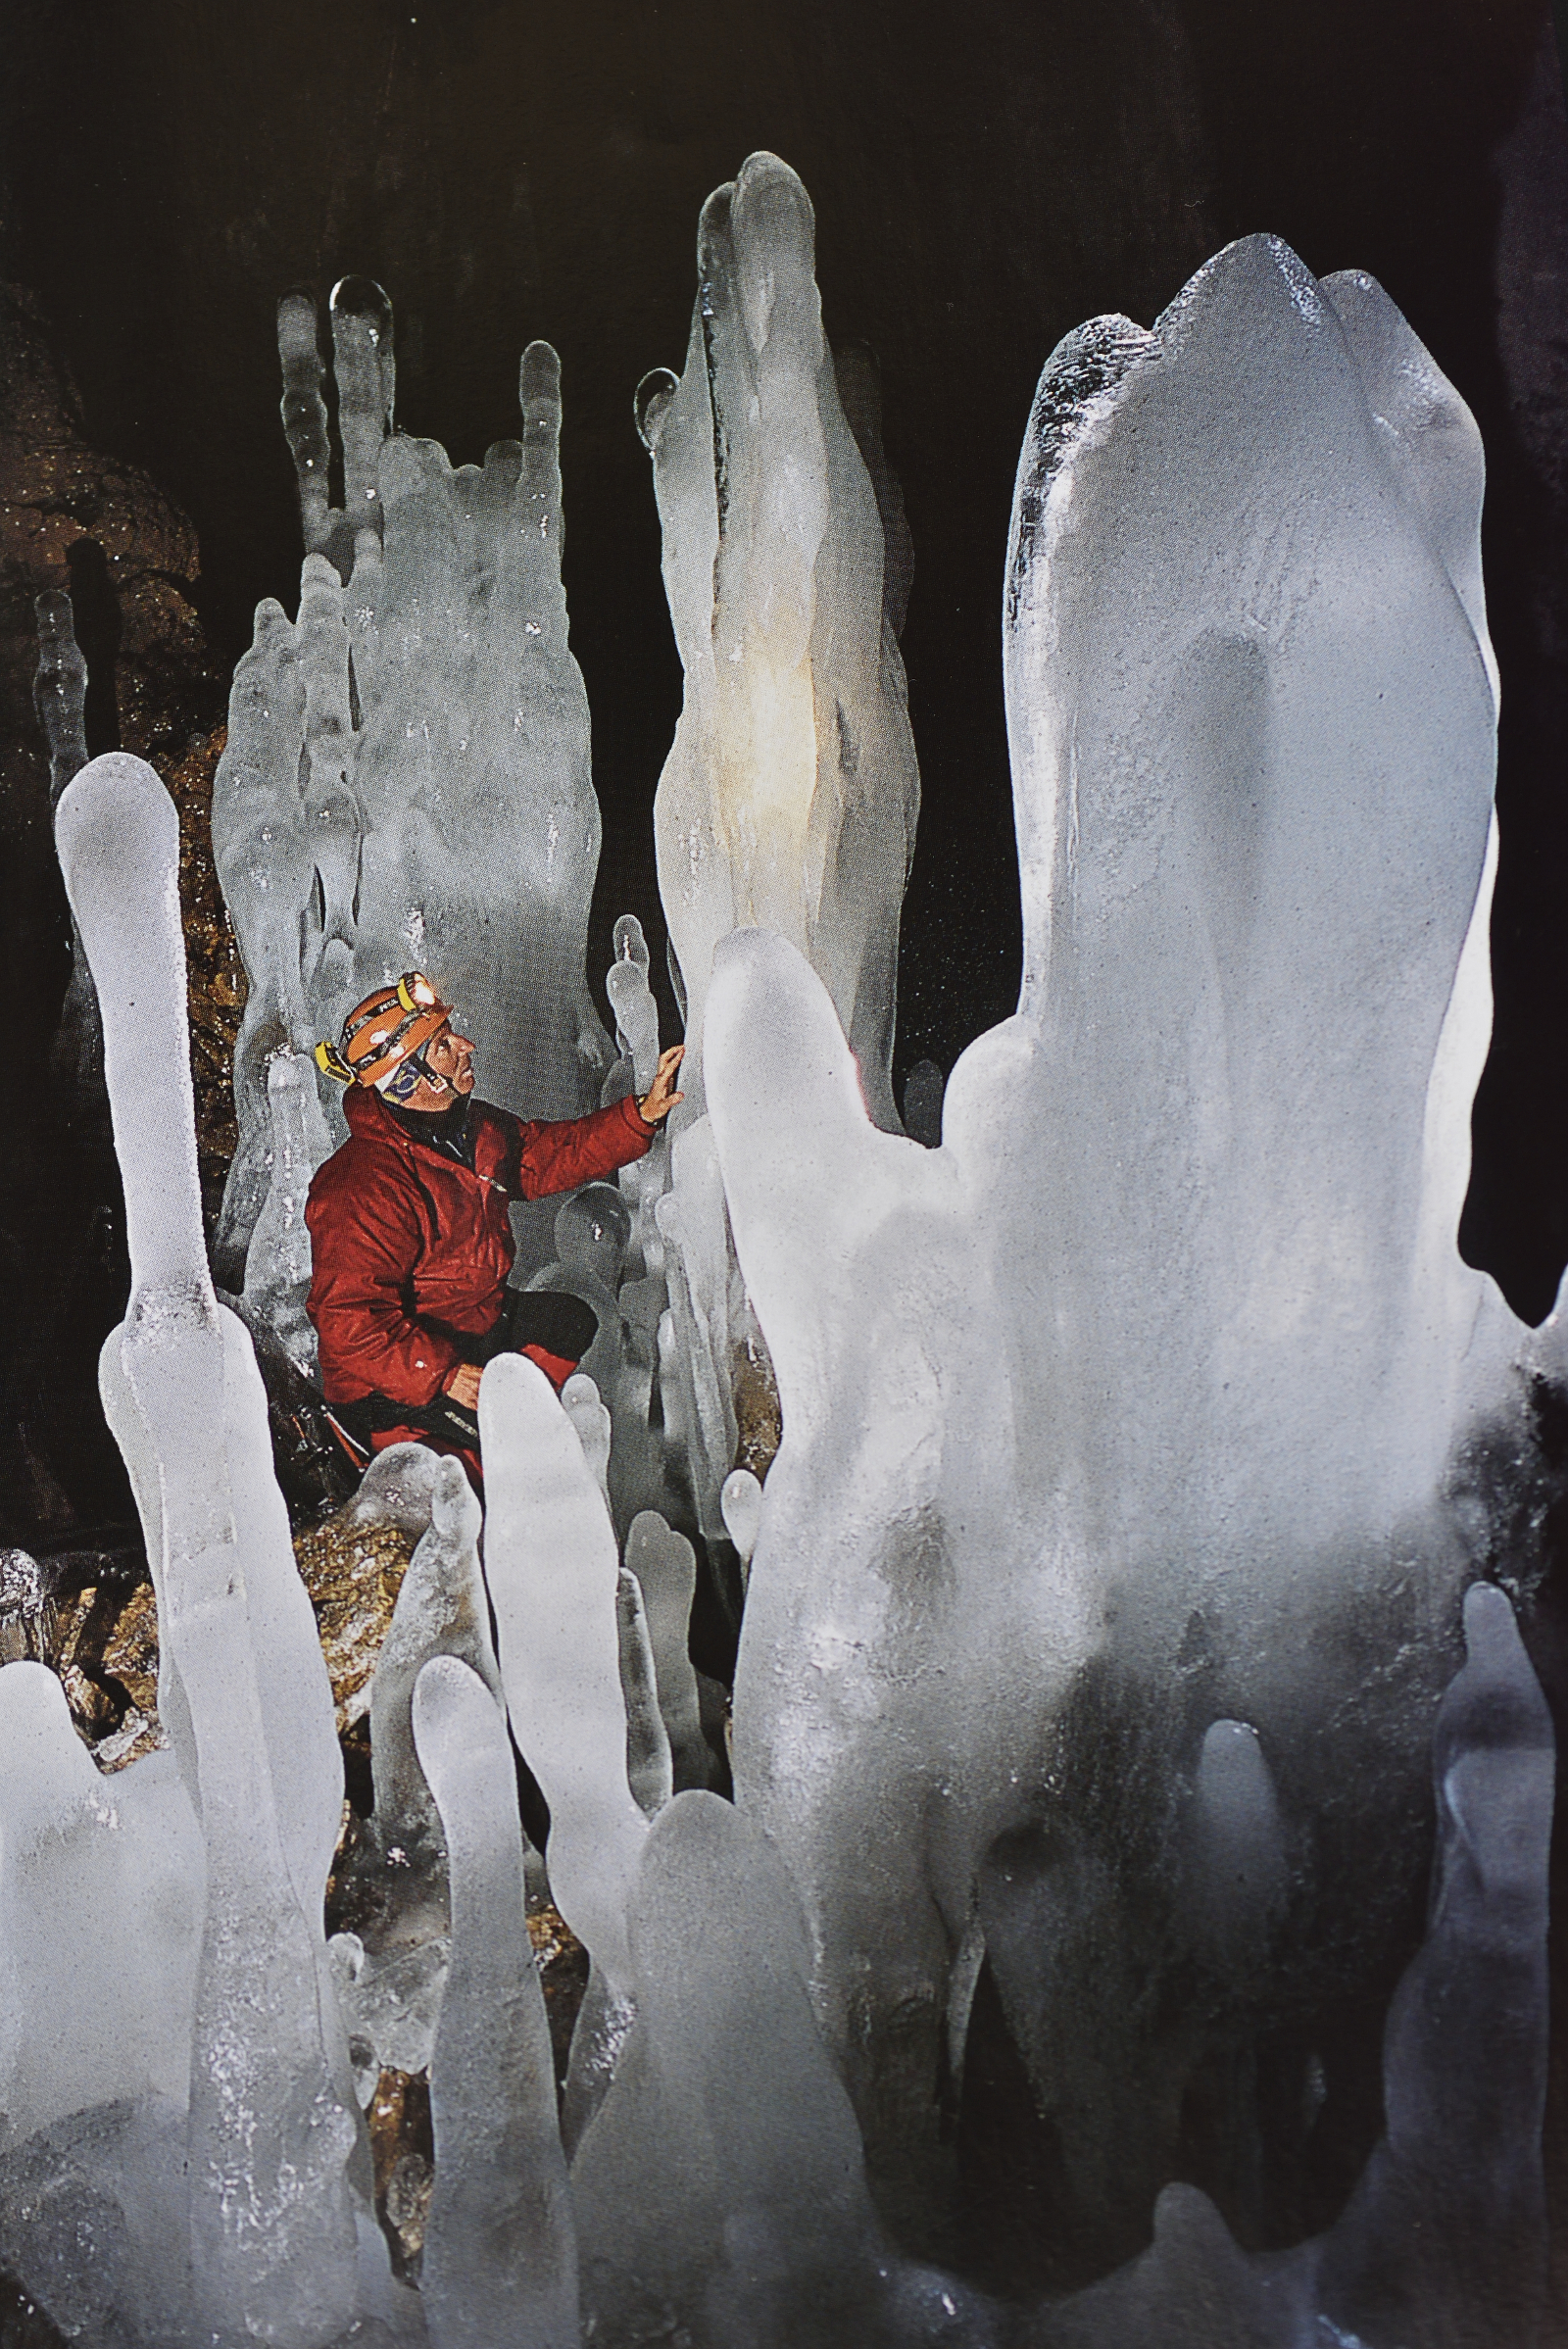  Stalagmiti nella ghiacciaia di Moncodeno (foto Lanfranchi)